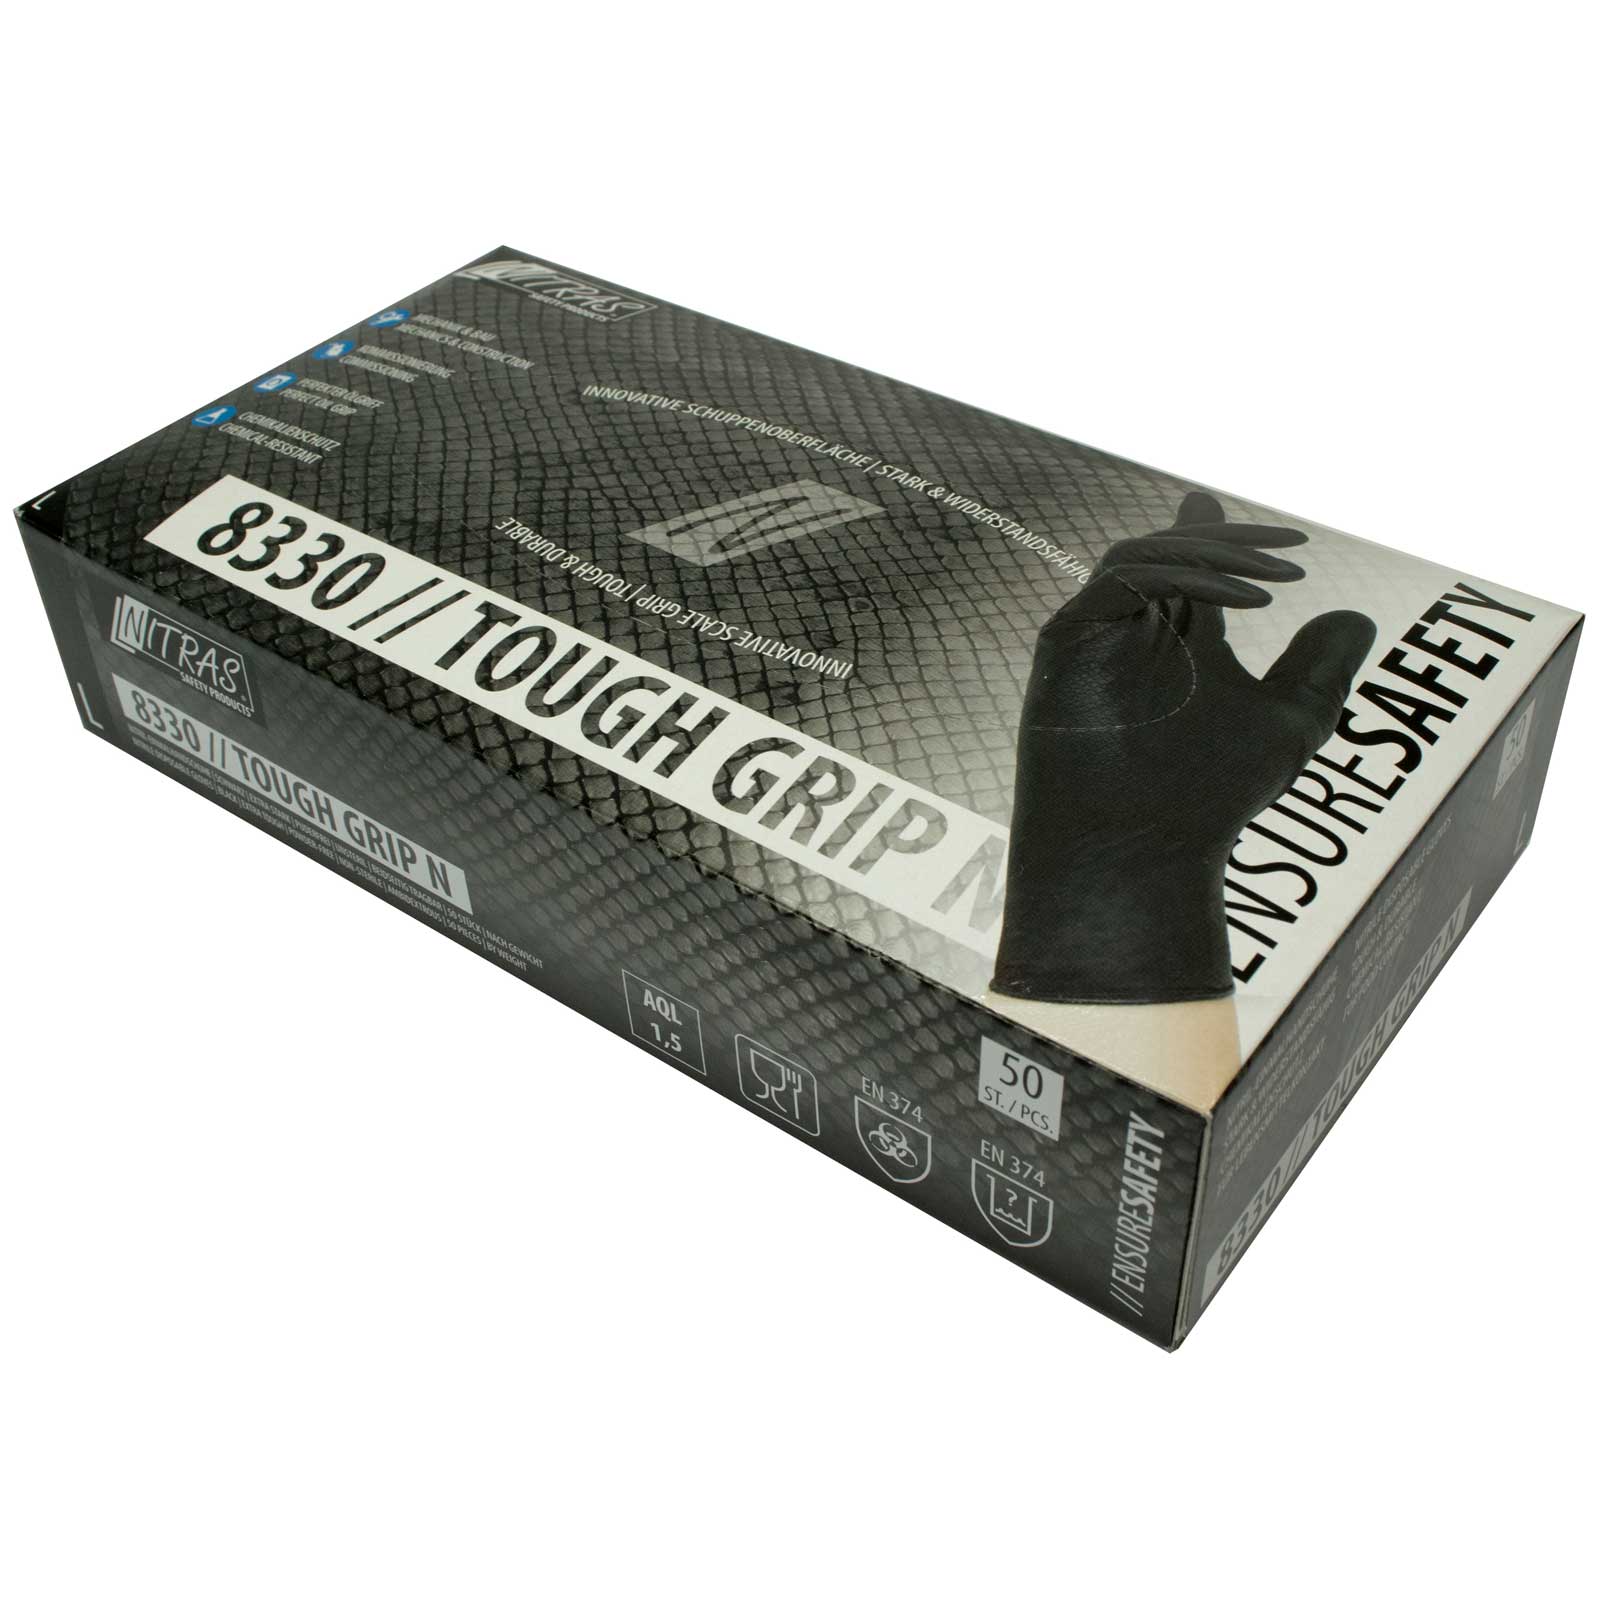 NITRAS Einmalhandschuhe Nitril Tough Grip N 8330 - puderfrei - Box à 50 Stück Größe:9 von NITRAS